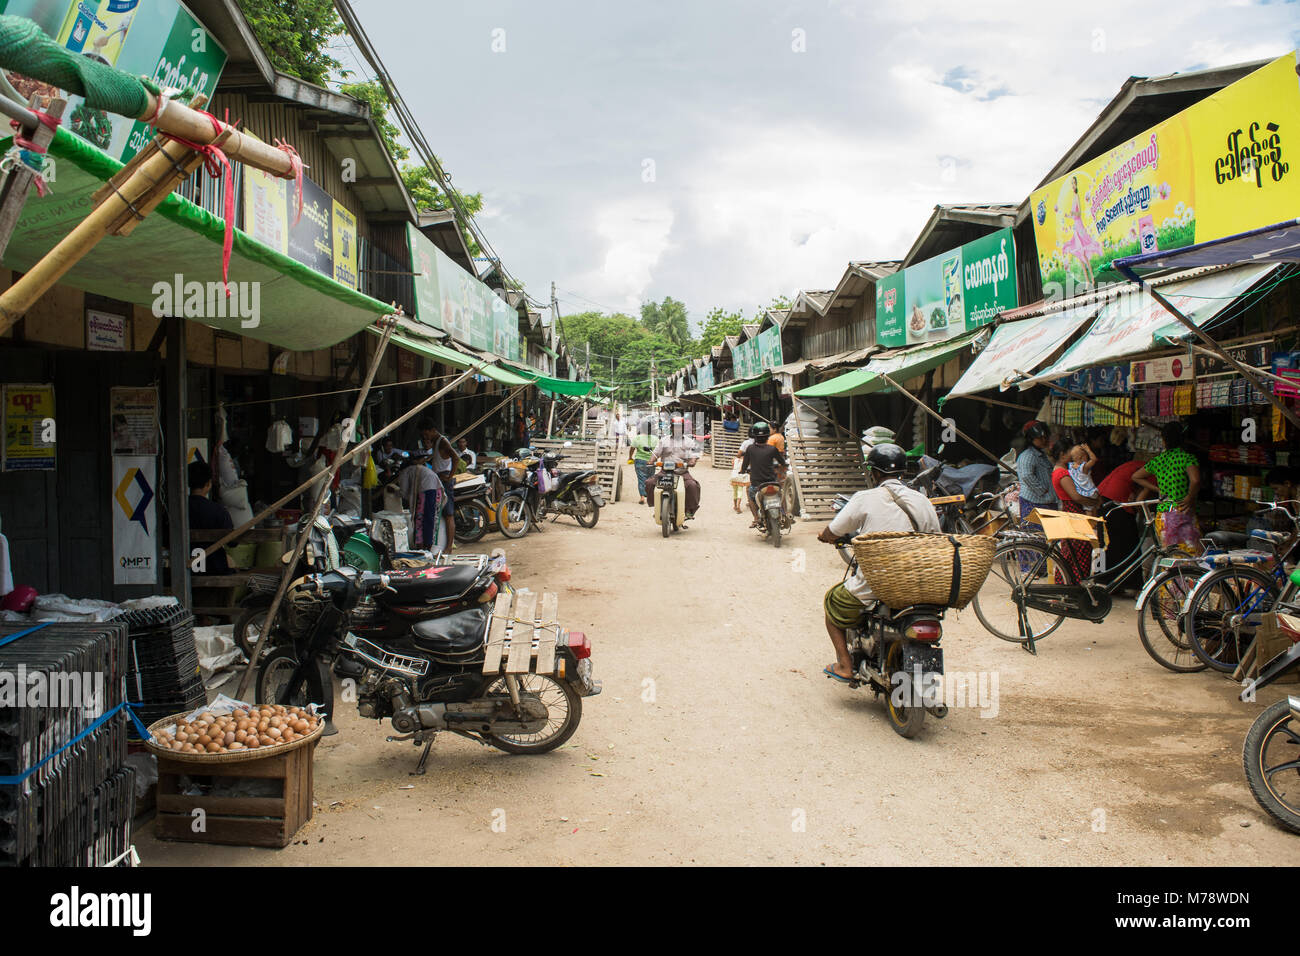 Strada di Nyaung U locale e tradizionale mercato asiatico con il popolo birmano in moto con possibile cesto storage acquistano merci, Bagan, MYANMAR Birmania, SE Asia Foto Stock